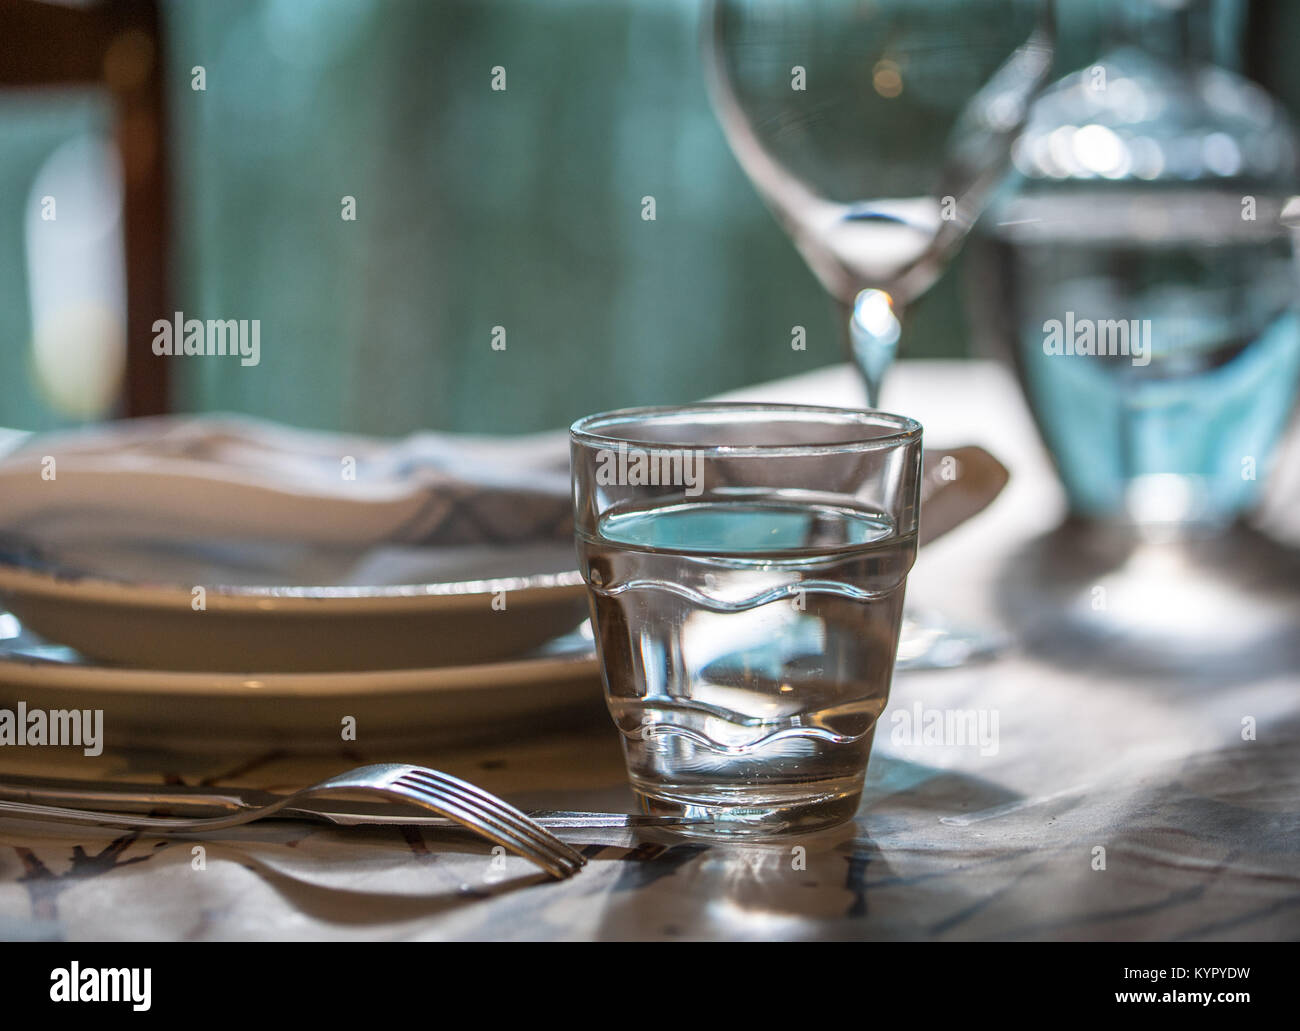 Set de table élégante pour dîner dans un été avec vaisselle en porcelaine blanche, blanc dentelle vintage serviette et verrerie Banque D'Images